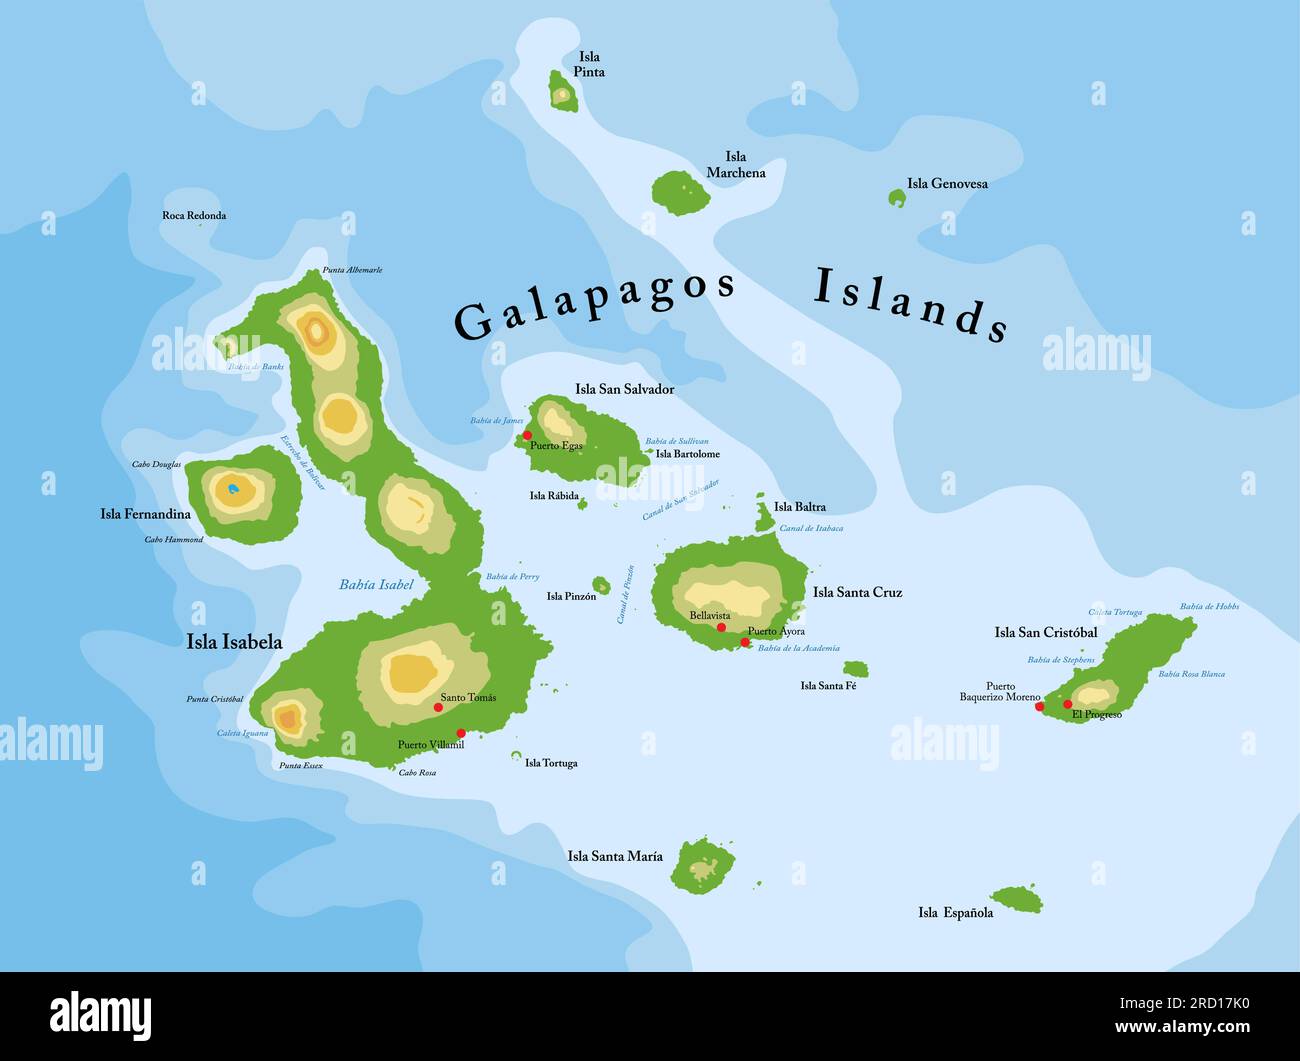 Mappa fisica altamente dettagliata delle isole Galapagos in formato vettoriale, con tutte le forme di rilievo, le regioni e le grandi città. Illustrazione Vettoriale